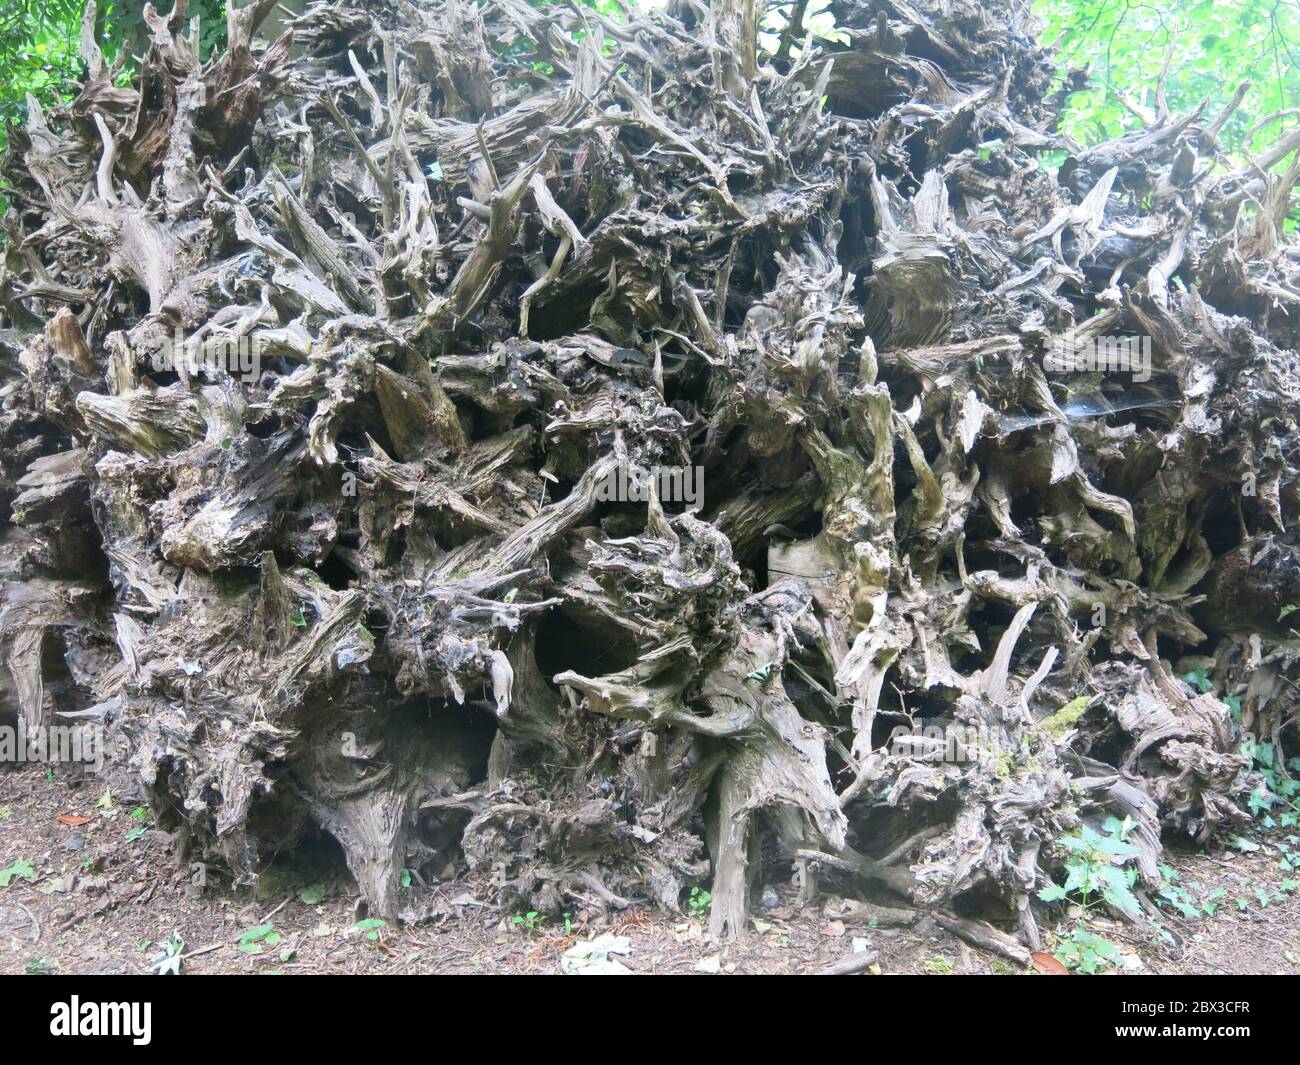 Ein Haufen von gehackten Baumstämmen und altem Holz ist ein perfekter, umweltfreundlicher Lebensraum für Insekten und Wildtiere. Stockfoto